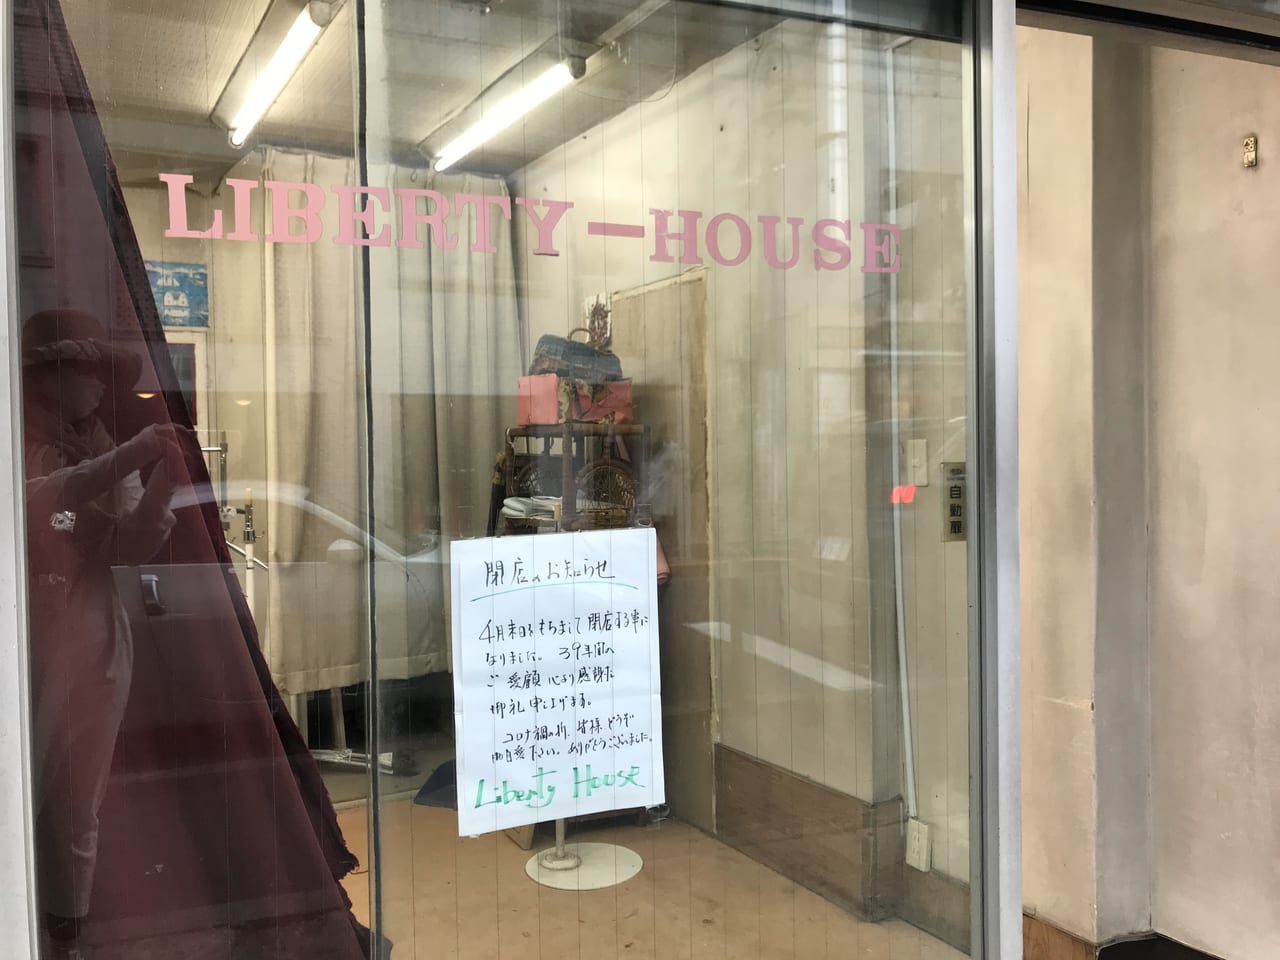 世田谷区上野毛ショッピングセンターリニューアル中リバティハウス39年間の歴史に幕、閉店2021年4月末日